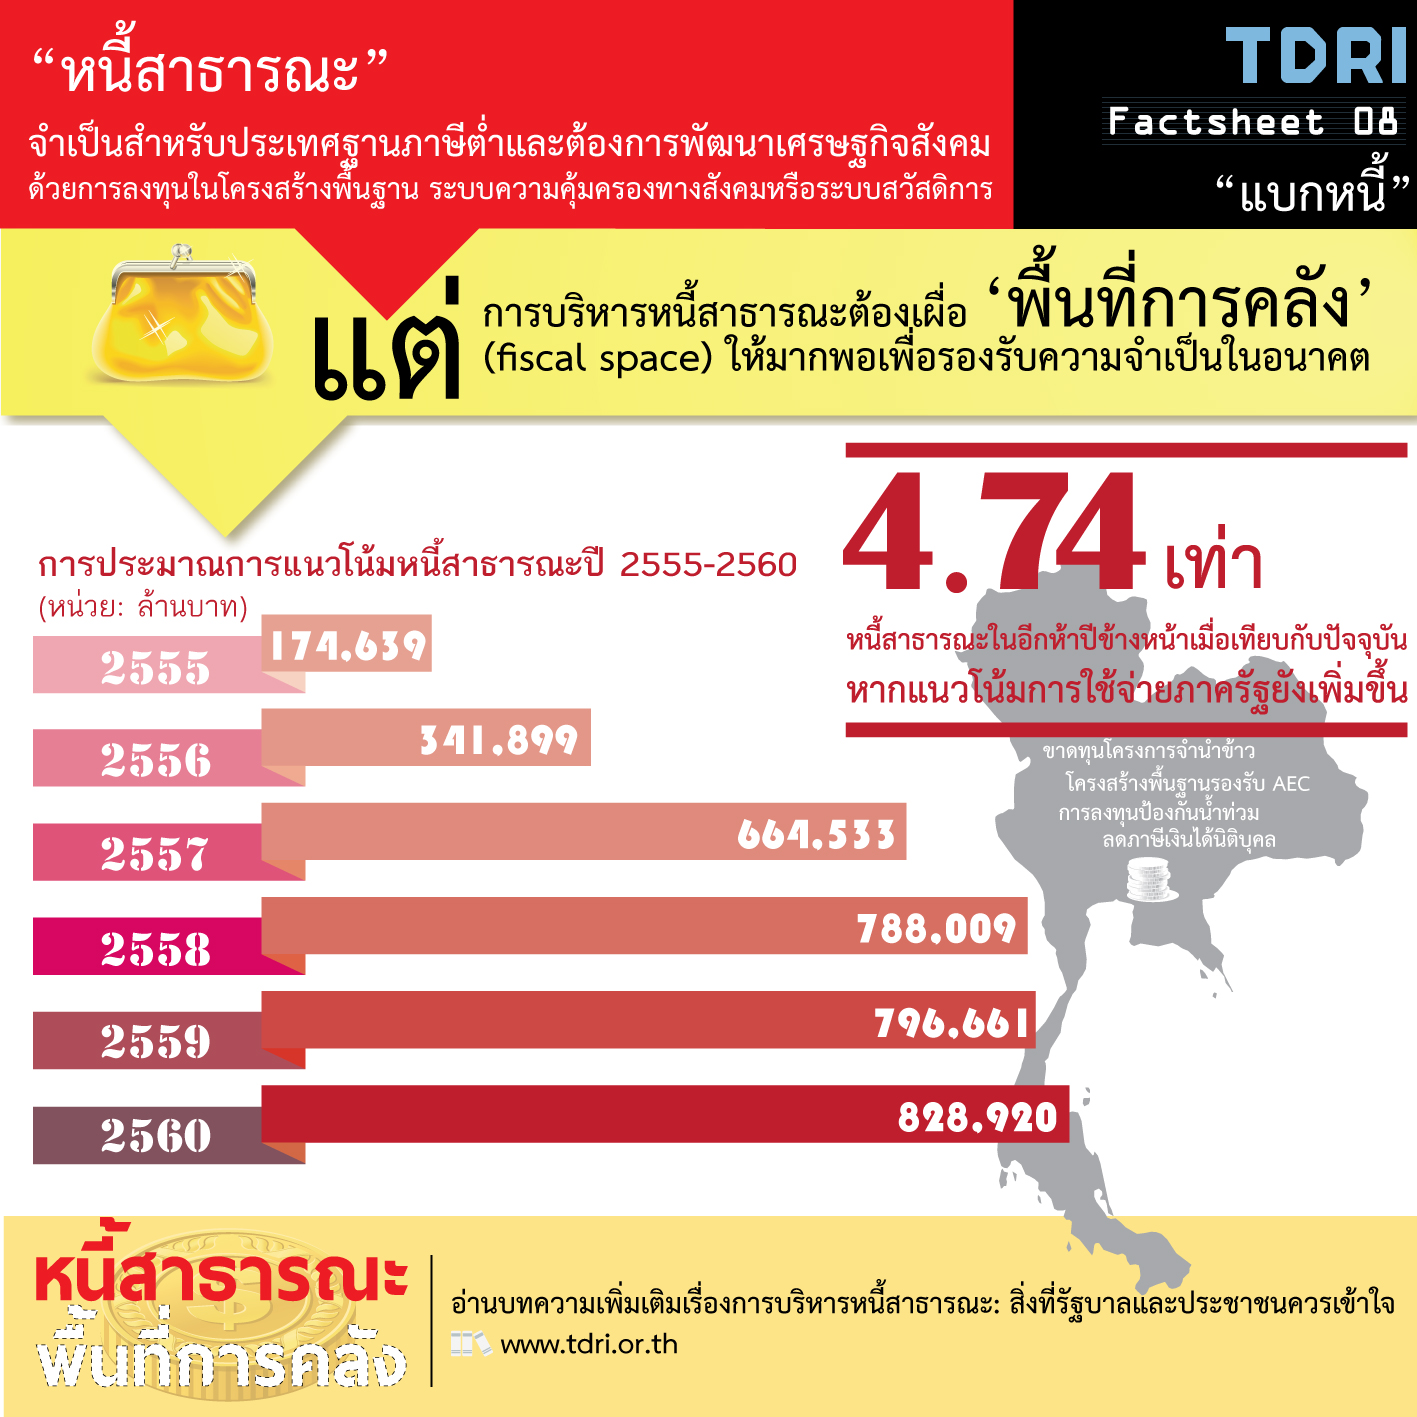 ประมาณการแนวโน้มหนี้สาธารณะโดย TDRI ในปี 2555 ที่มาภาพ: http://tdri.or.th/wp-content/uploads/2013/03/Factsheet-PubDept.jpg